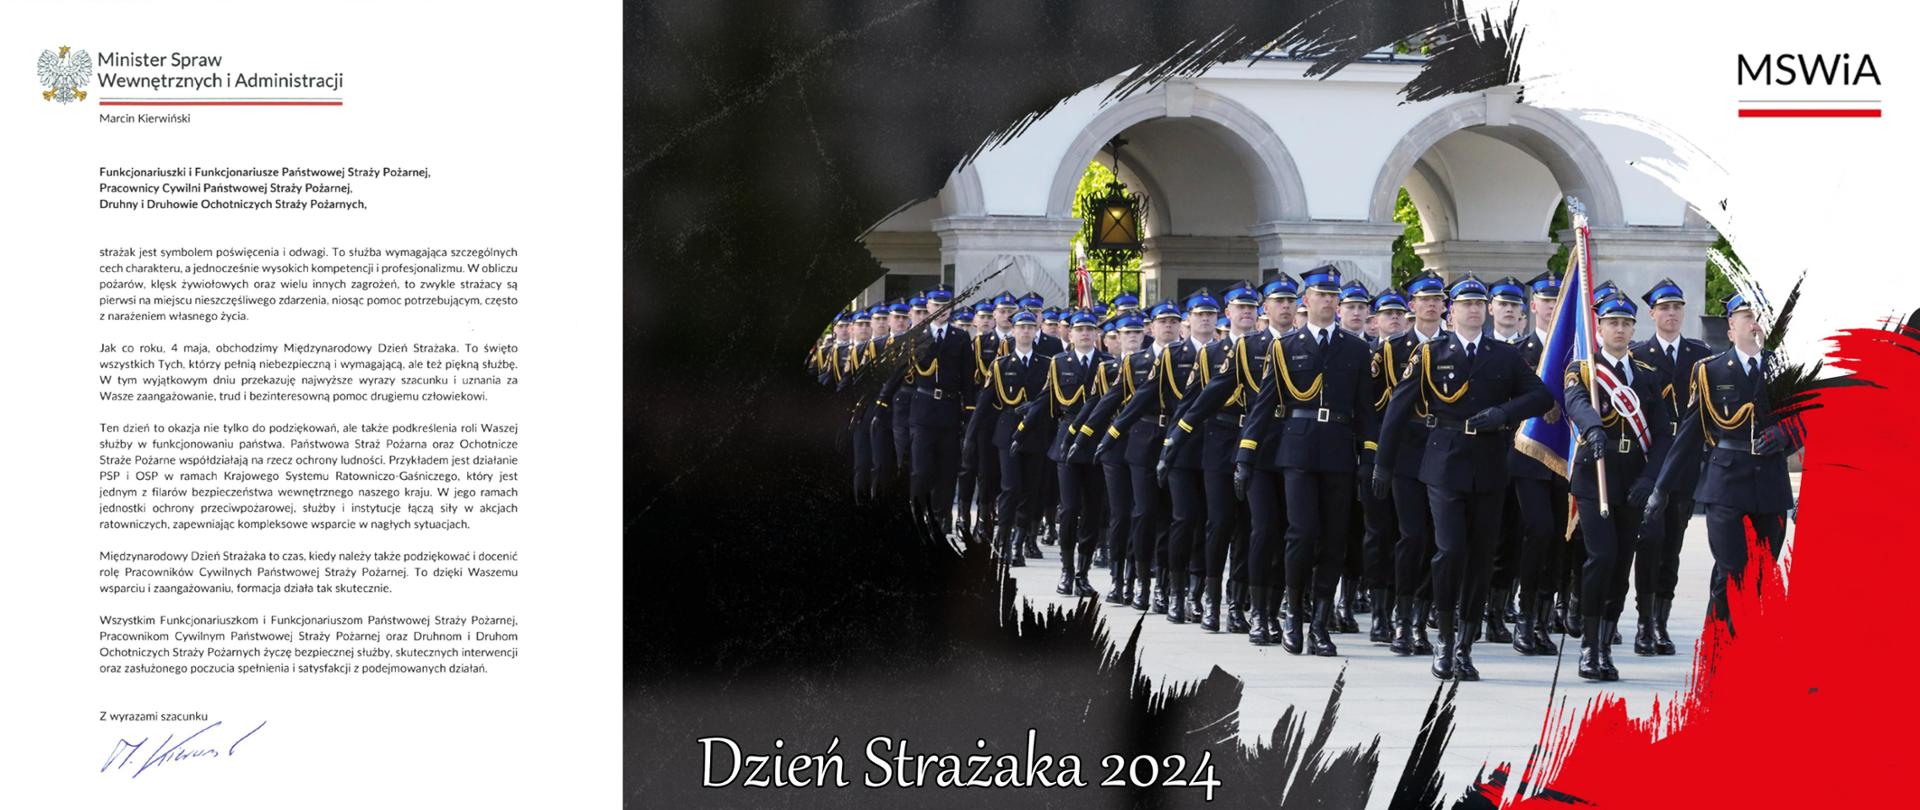 Kolorowa fotografia przedstawia z lewej strony życzenia Ministra Spraw Wewnętrznych i Administracji, a z prawej strony zdjęcie Strażaków w mundurach wyjściowych